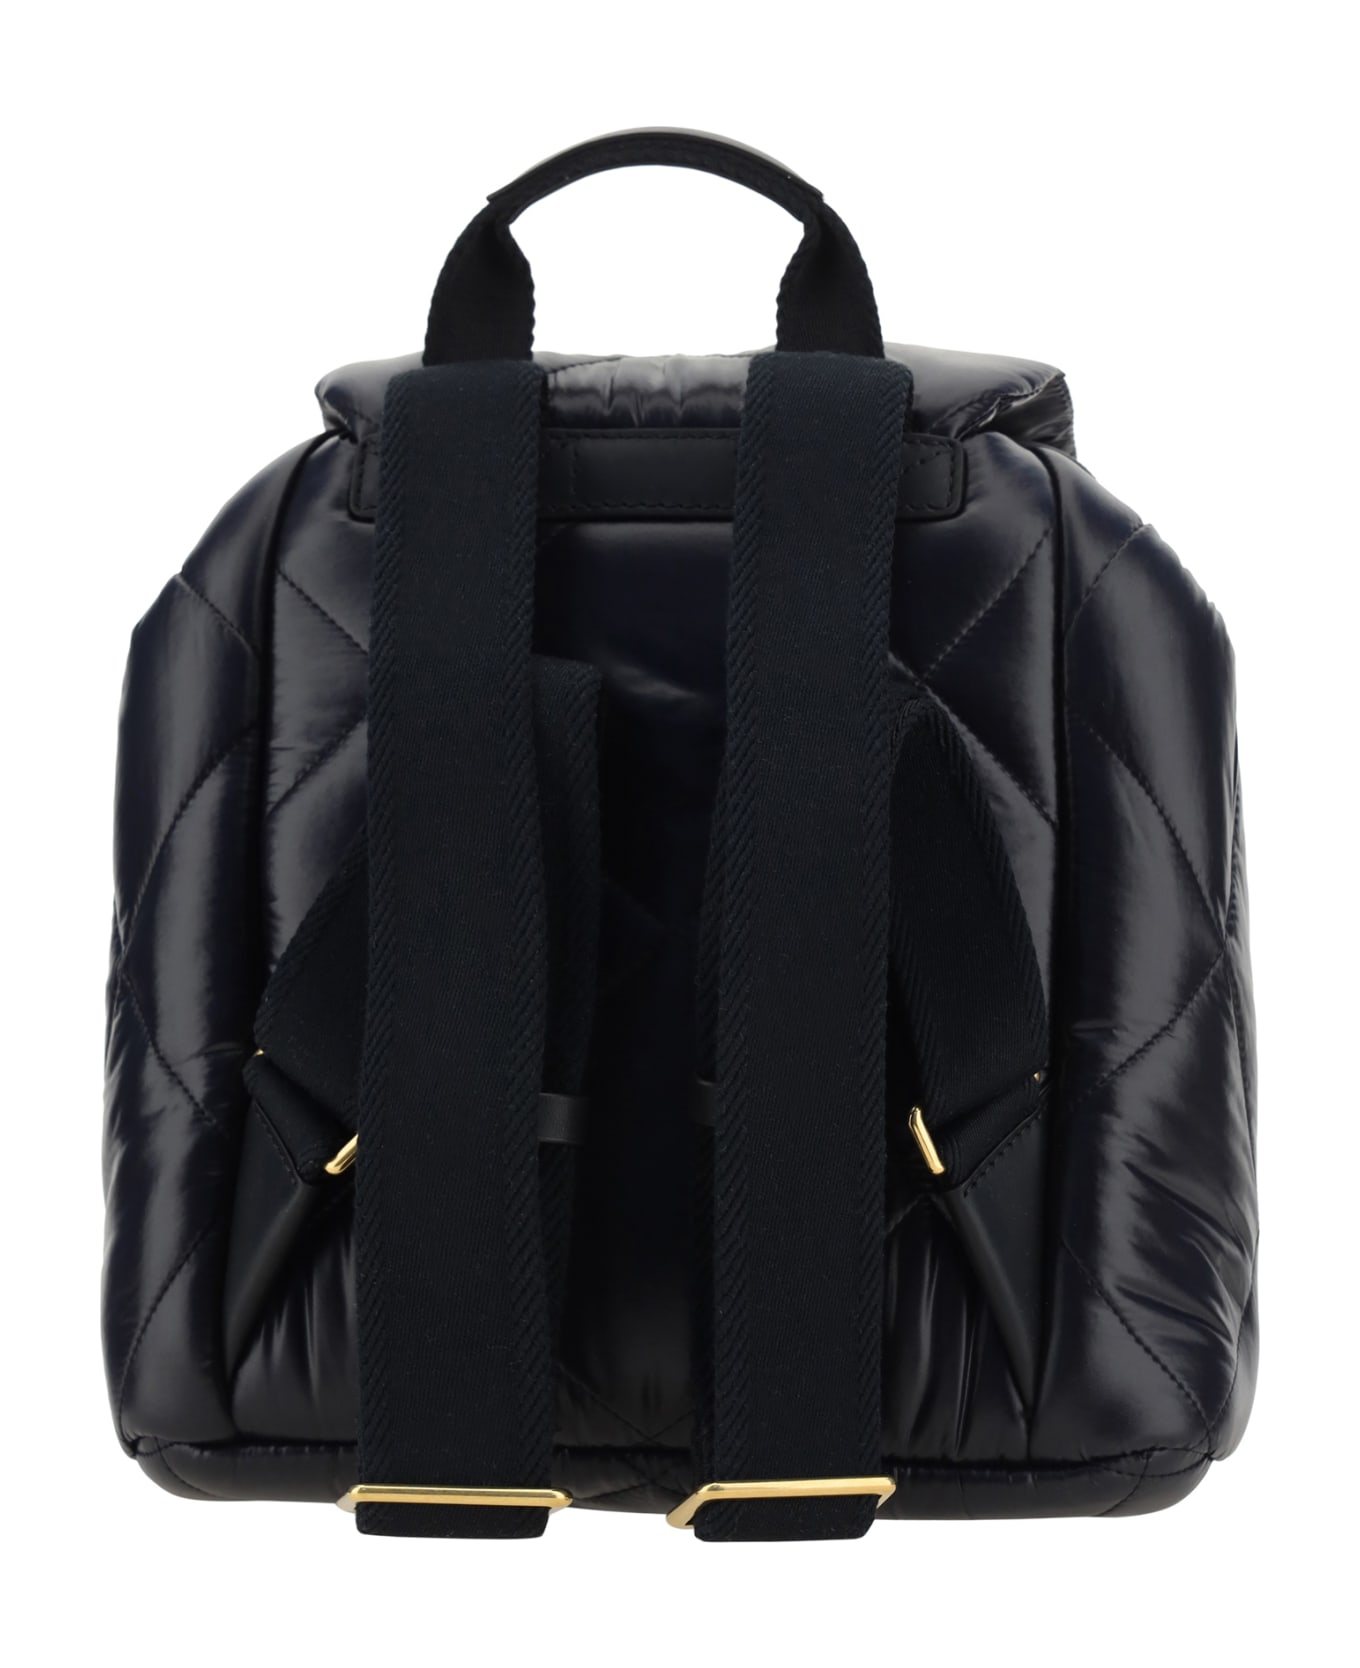 Moncler Puf Backpack - Black